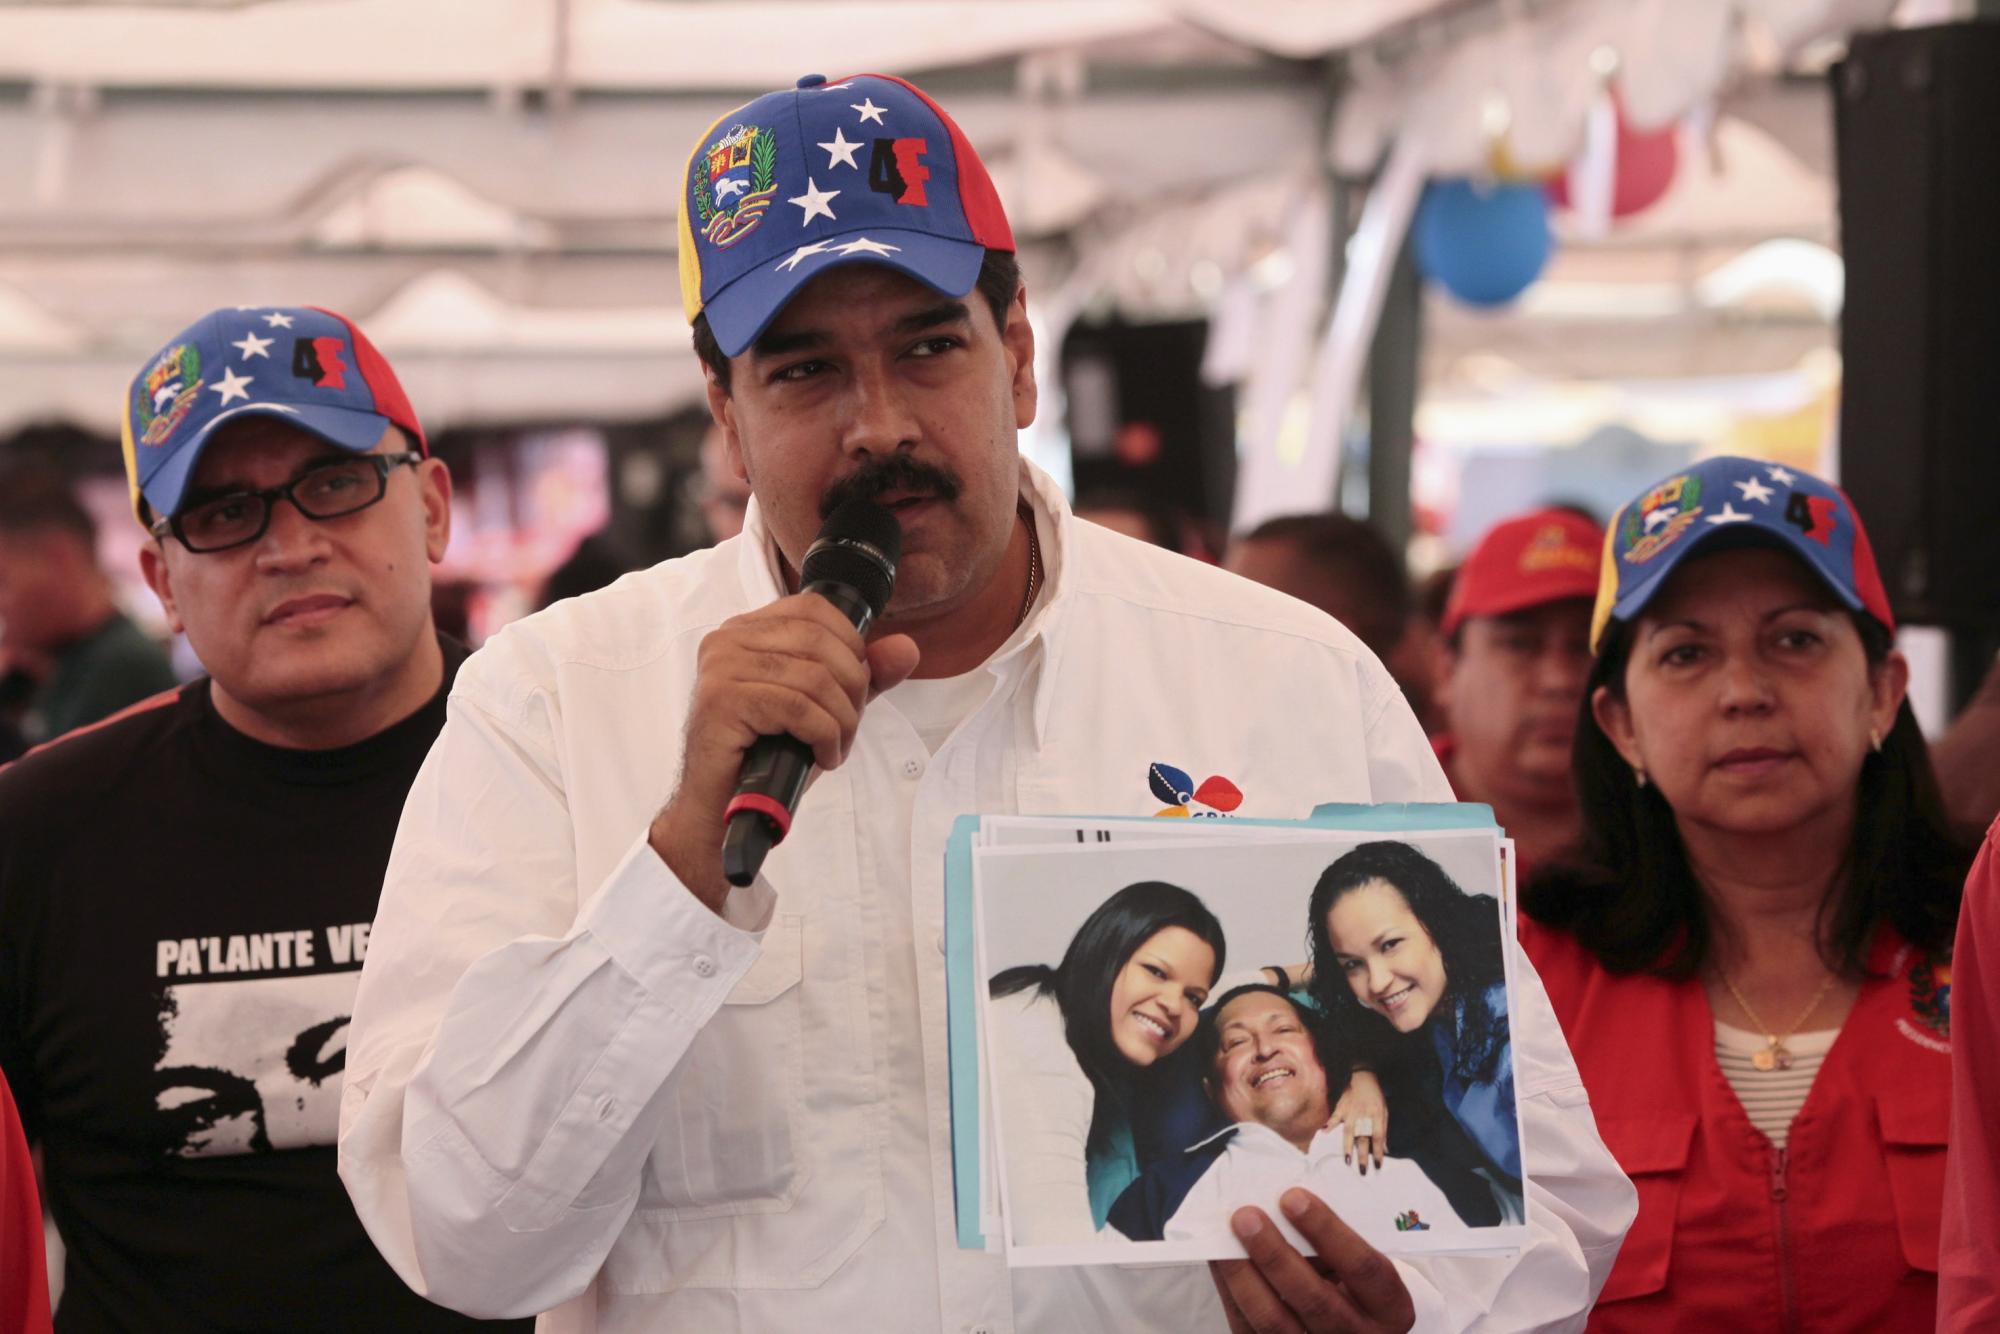 查韦斯返回委内瑞拉 民众欢欣鼓舞政治前景不明朗